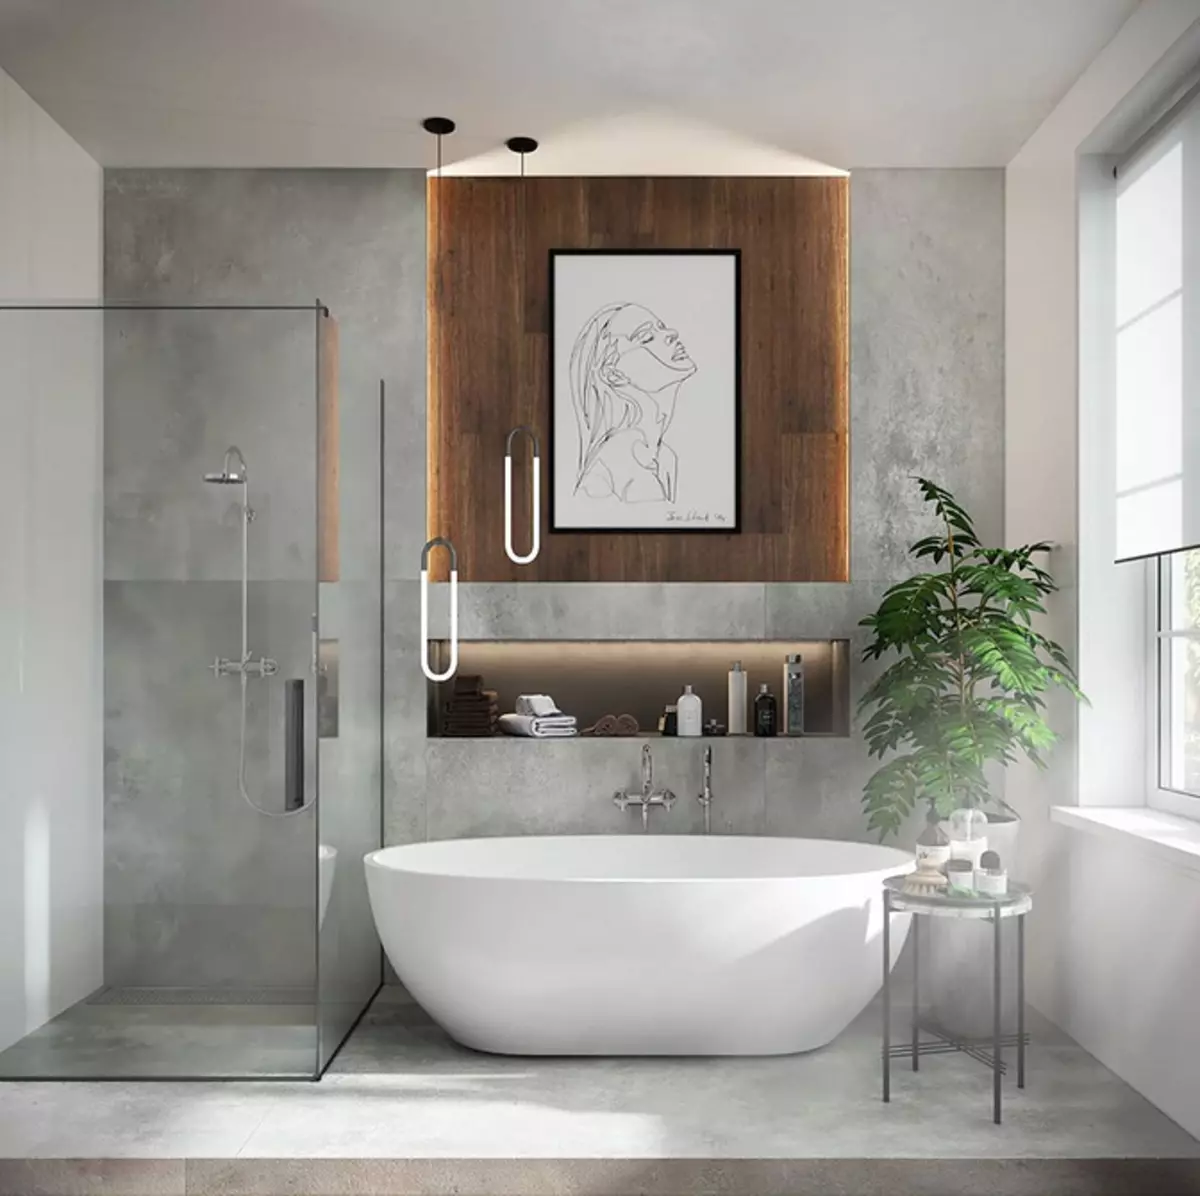 Deseño de baño con ducha e baño: ideas interiores en 75 fotos - IVD.RU 4108_23